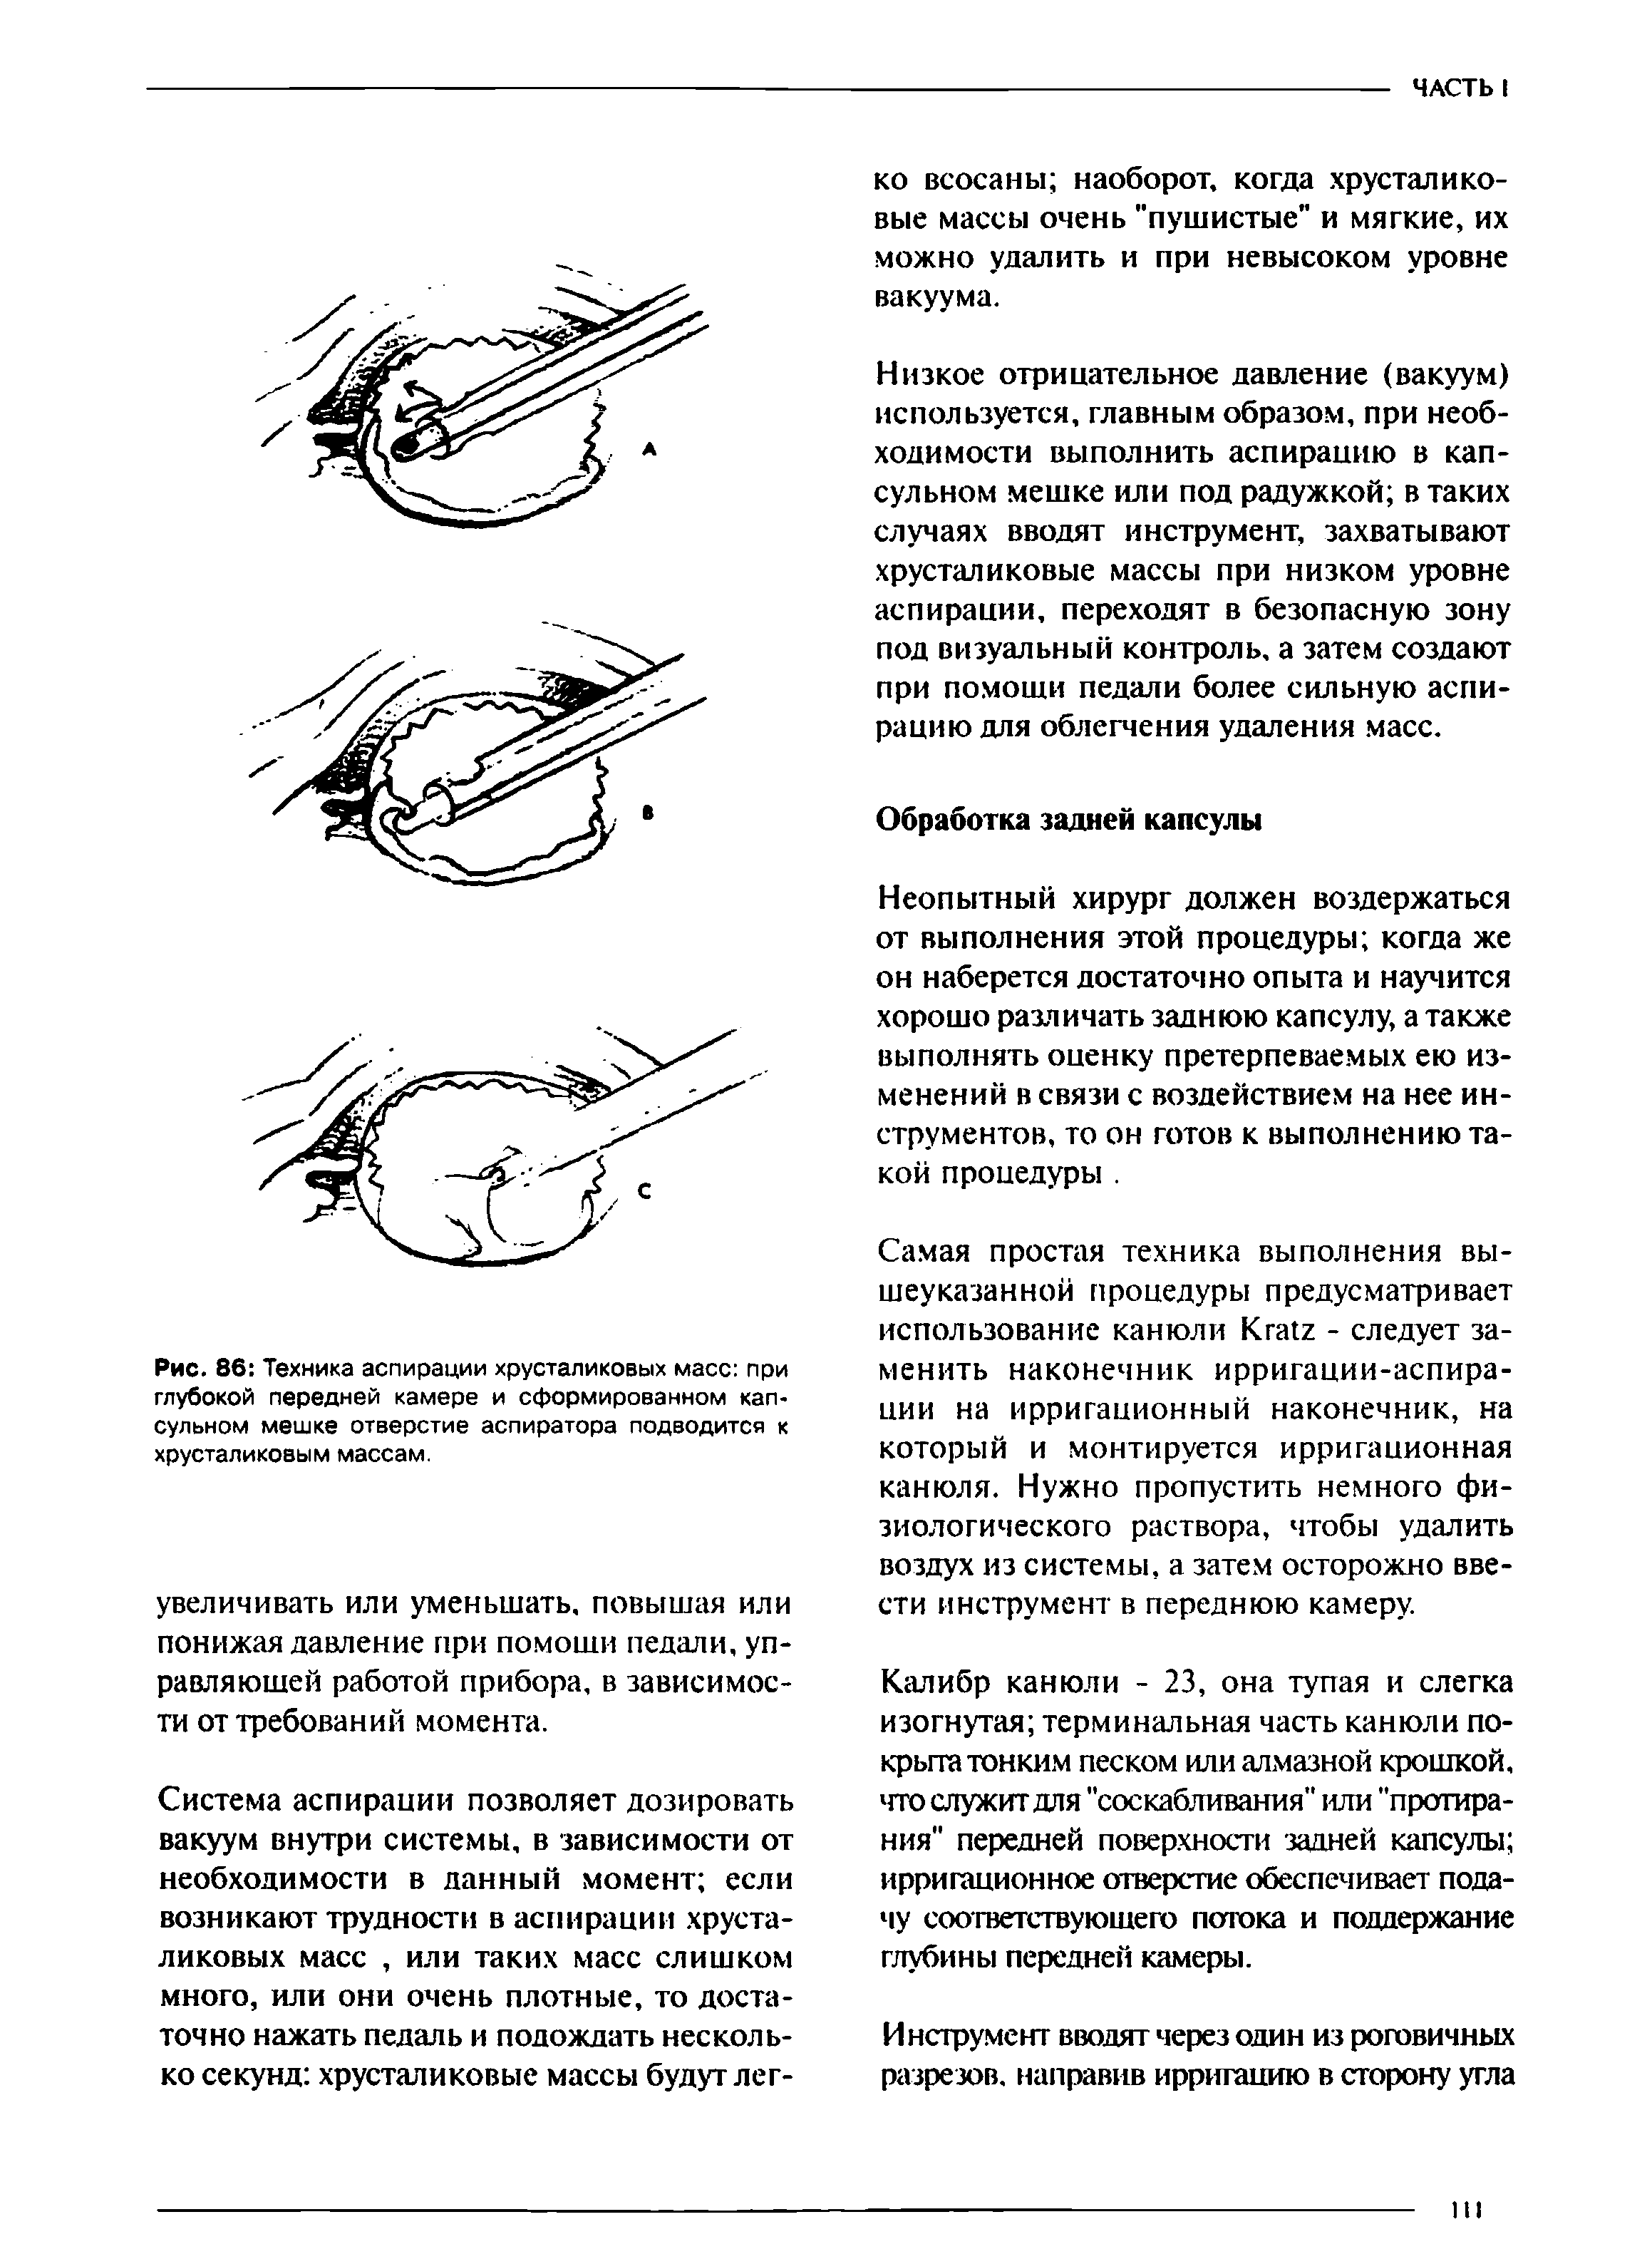 Рис. 86 Техника аспирации хрусталиковых масс при глубокой передней камере и сформированном капсульном мешке отверстие аспиратора подводится к хрусталиковым массам.